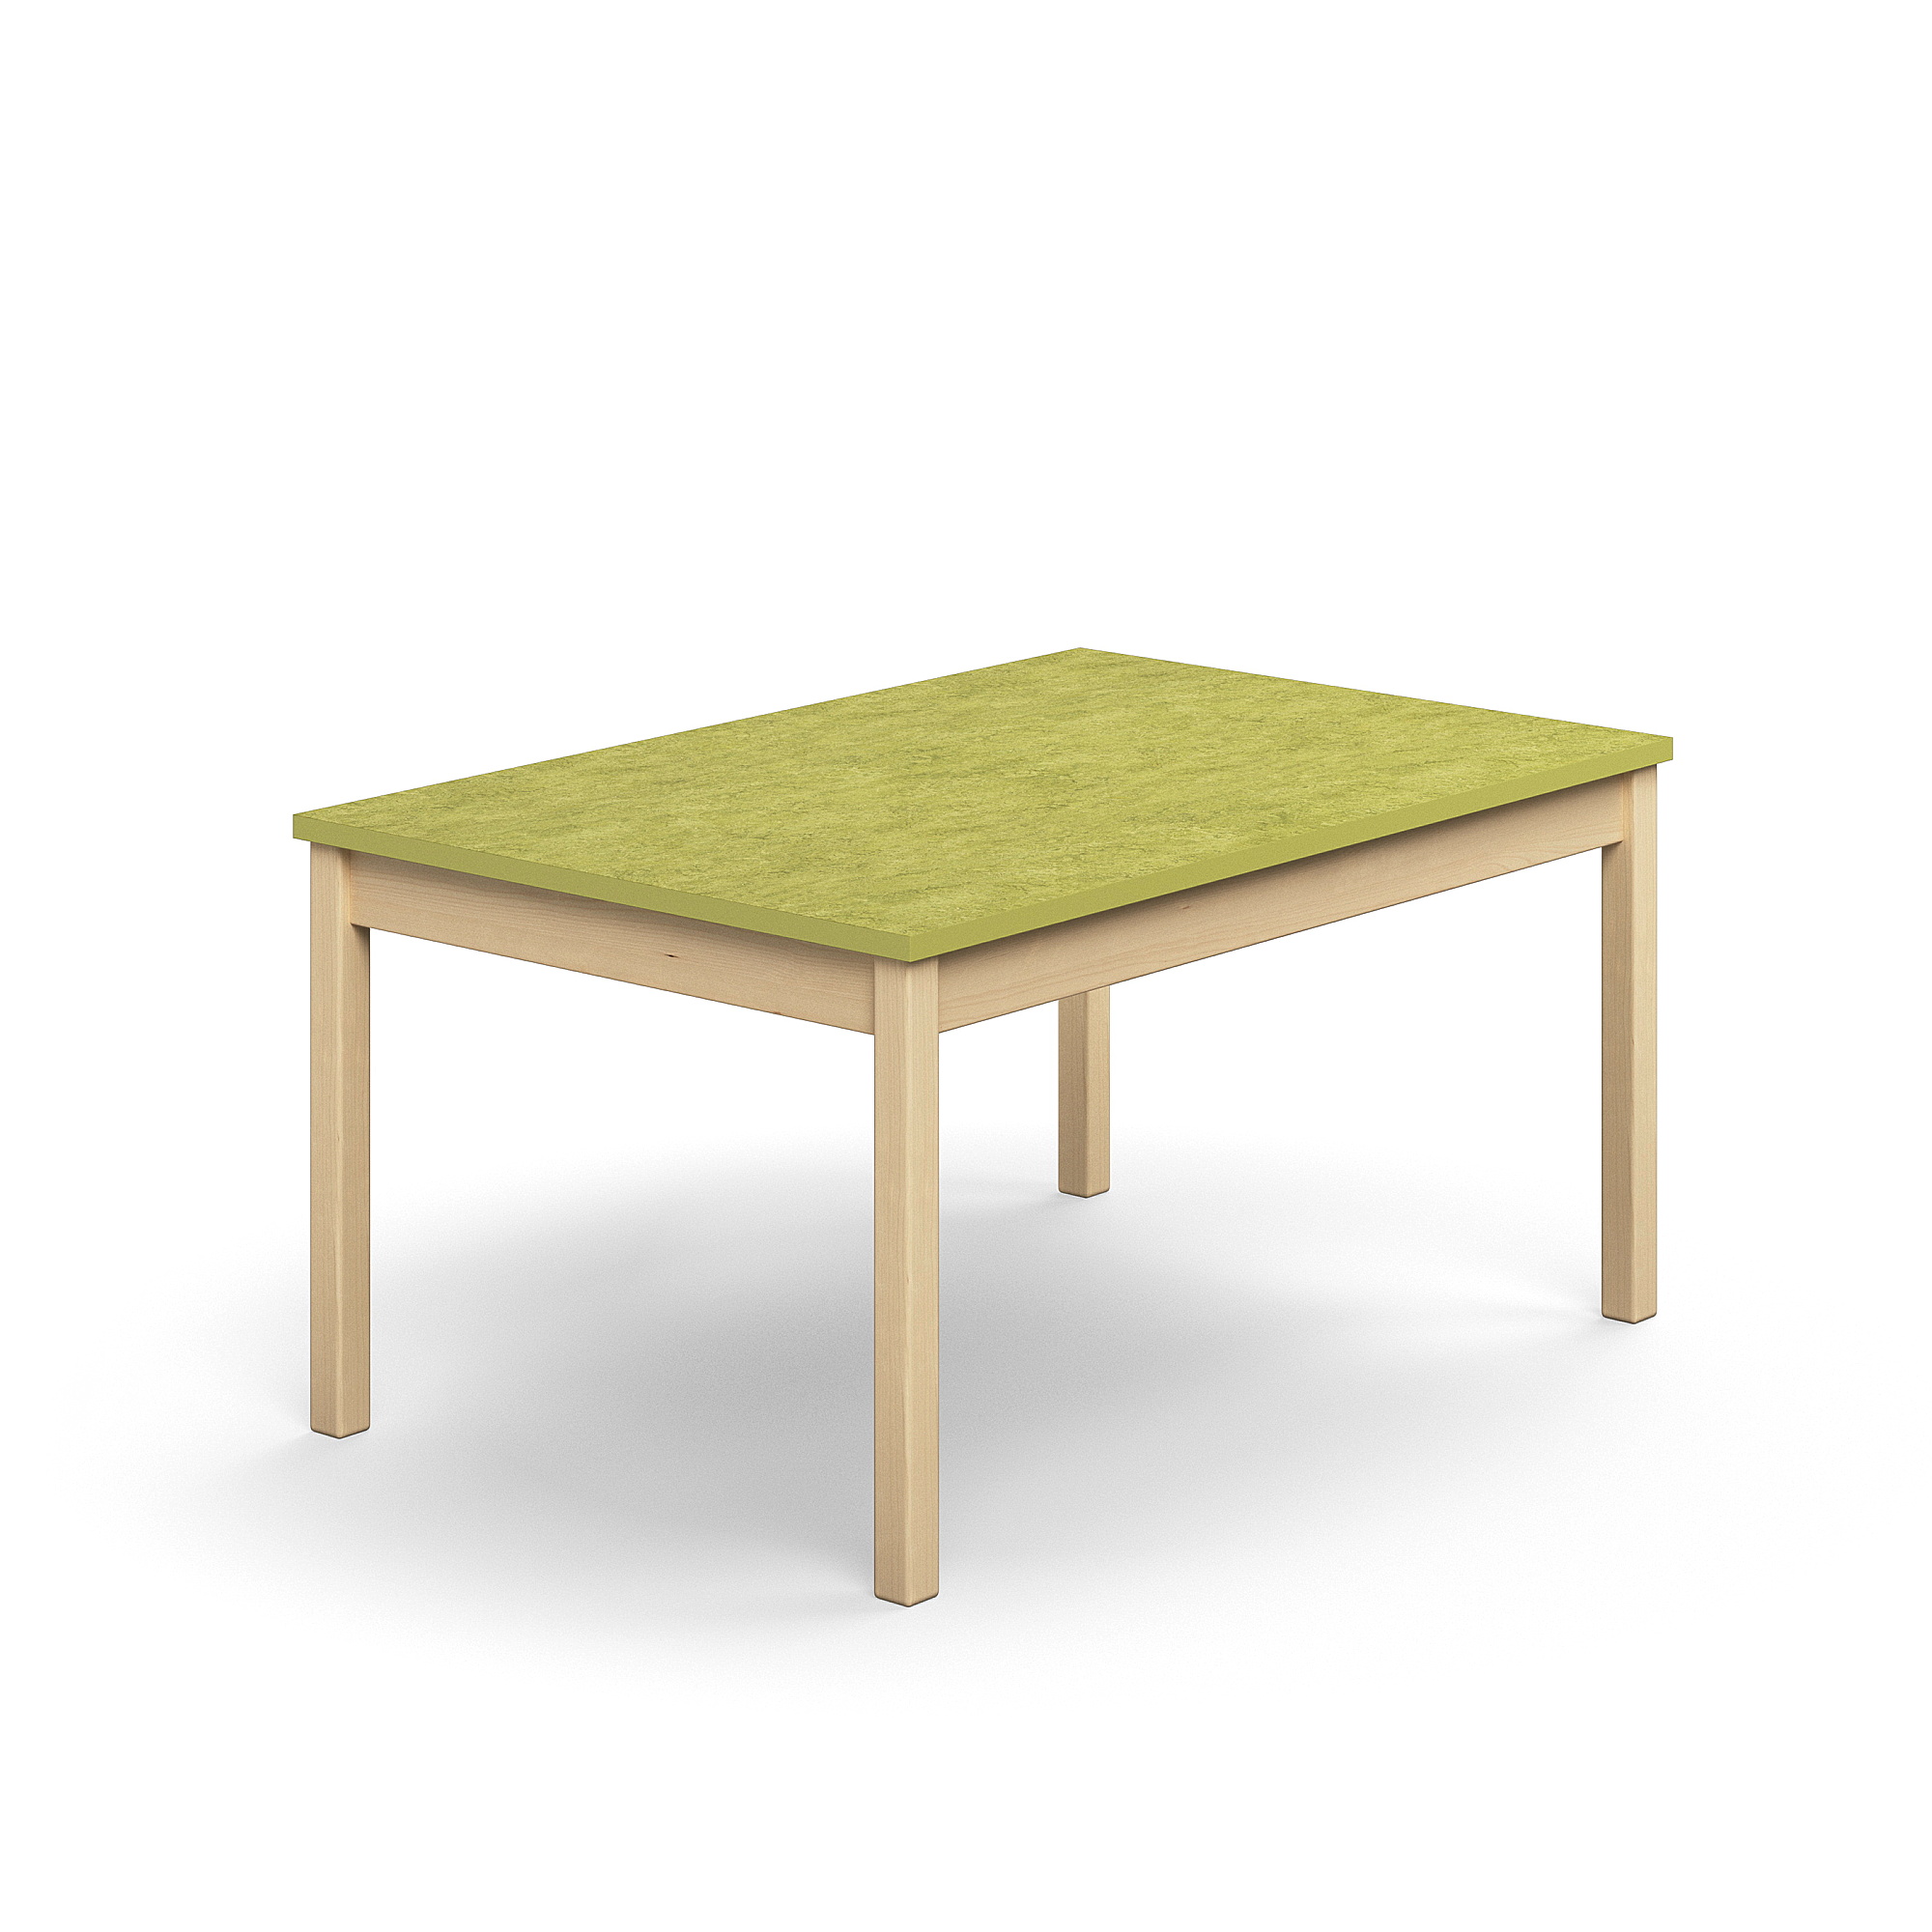 Stůl DECIBEL, 1200x800x590 mm, akustické linoleum, bříza/limetkově zelená